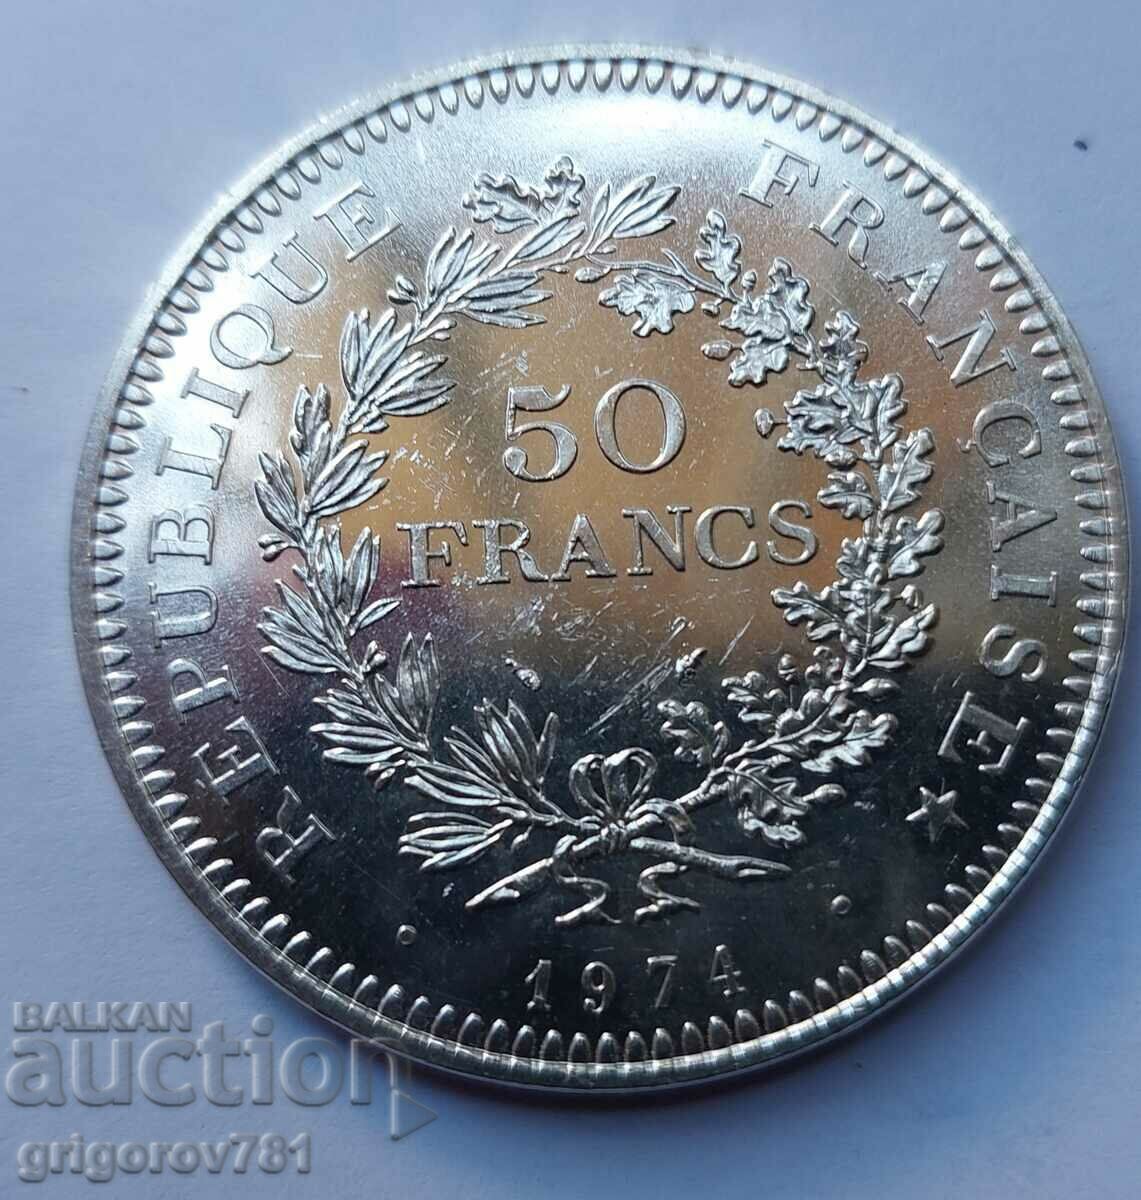 Ασήμι 50 φράγκων Γαλλία 1974 - Ασημένιο νόμισμα #25